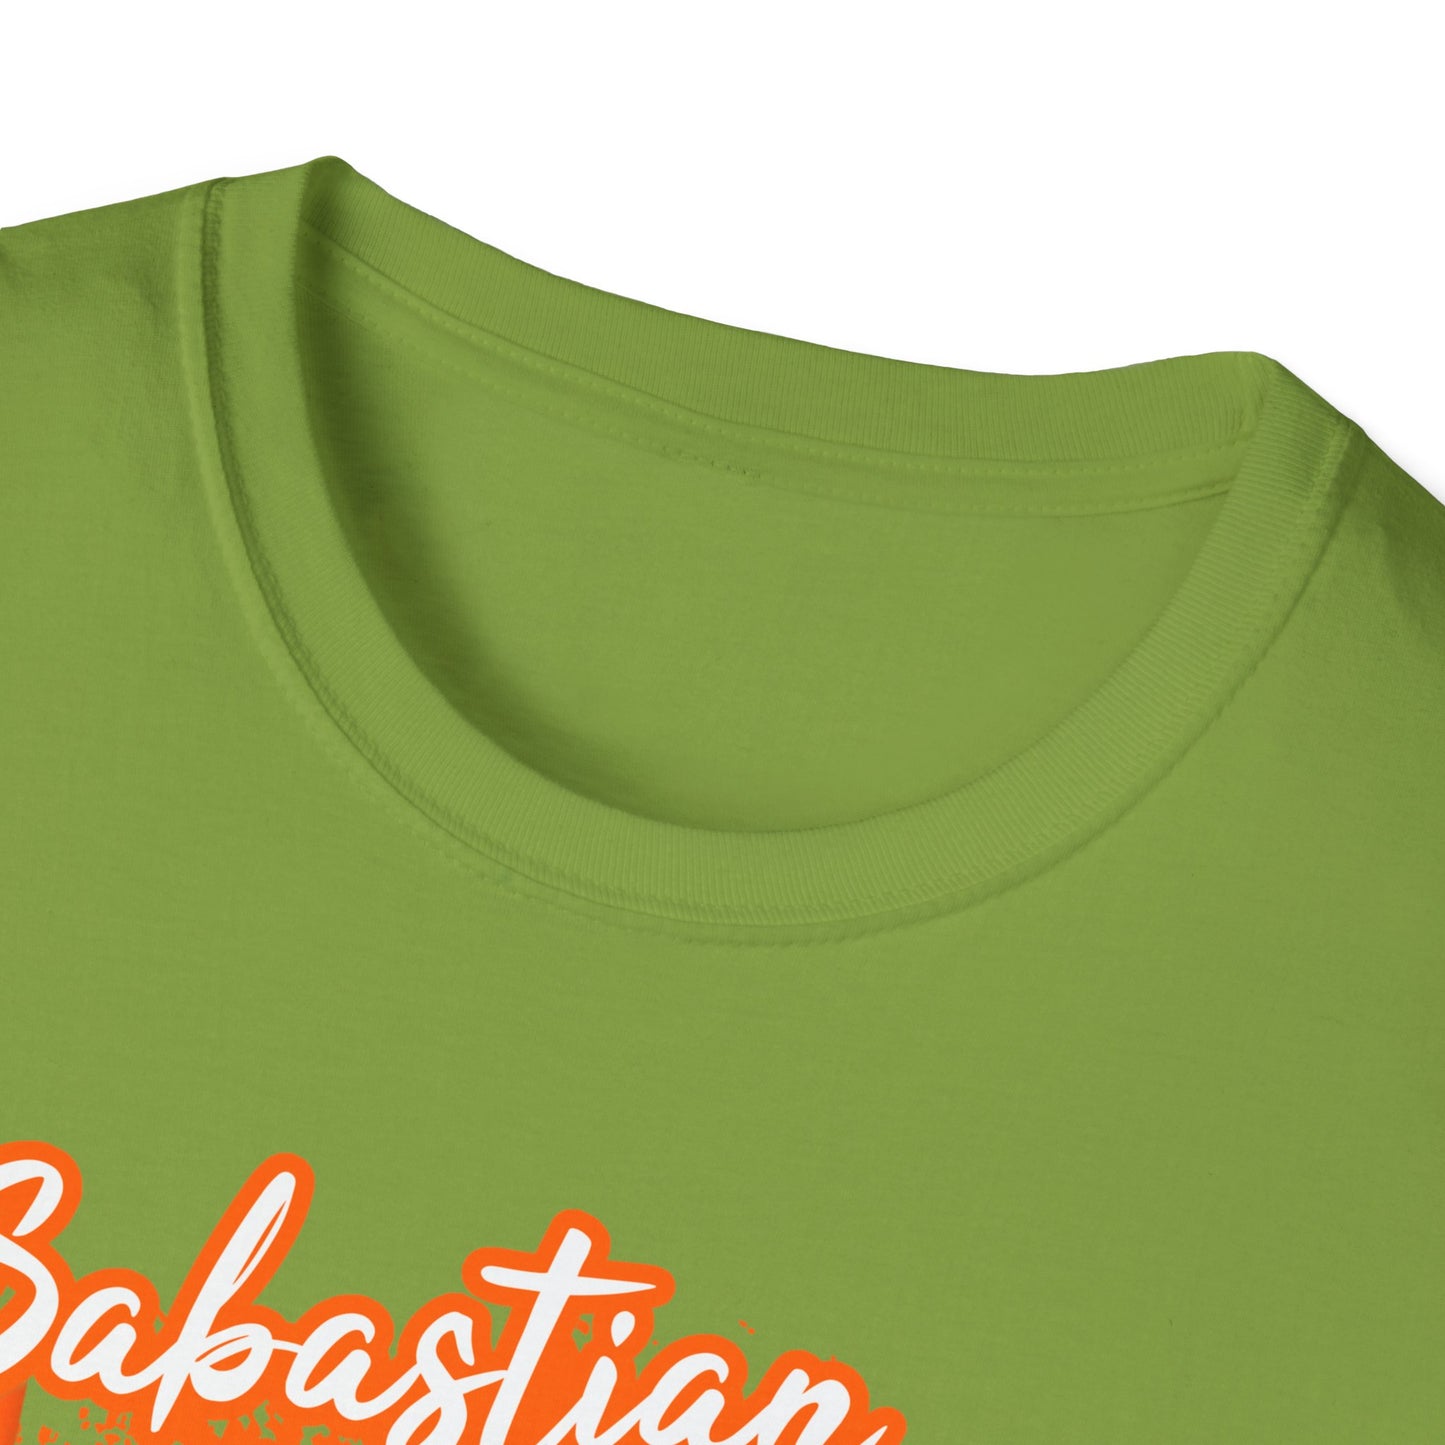 Sabastian Unisex Softstyle T-Shirt